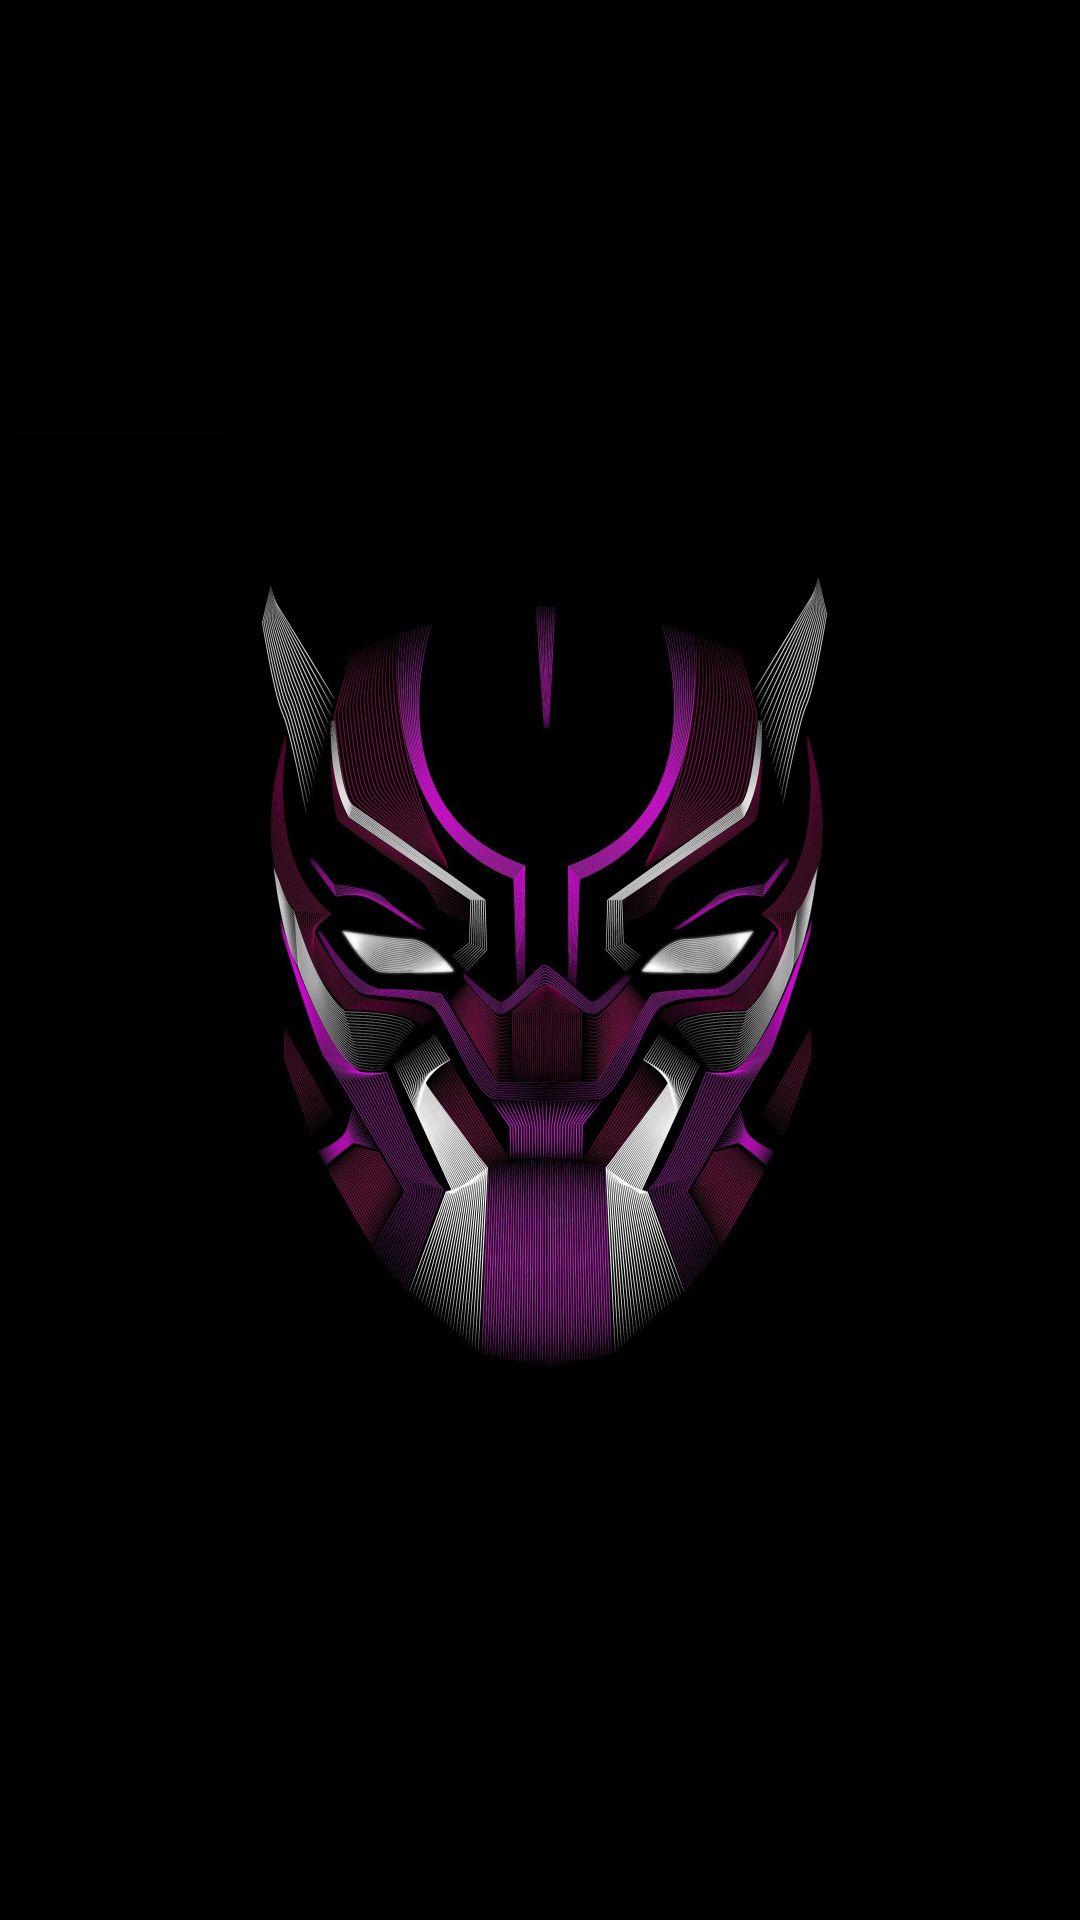 Black Panther, mask, minimal, 1080x1920 wallpaper. Superhero